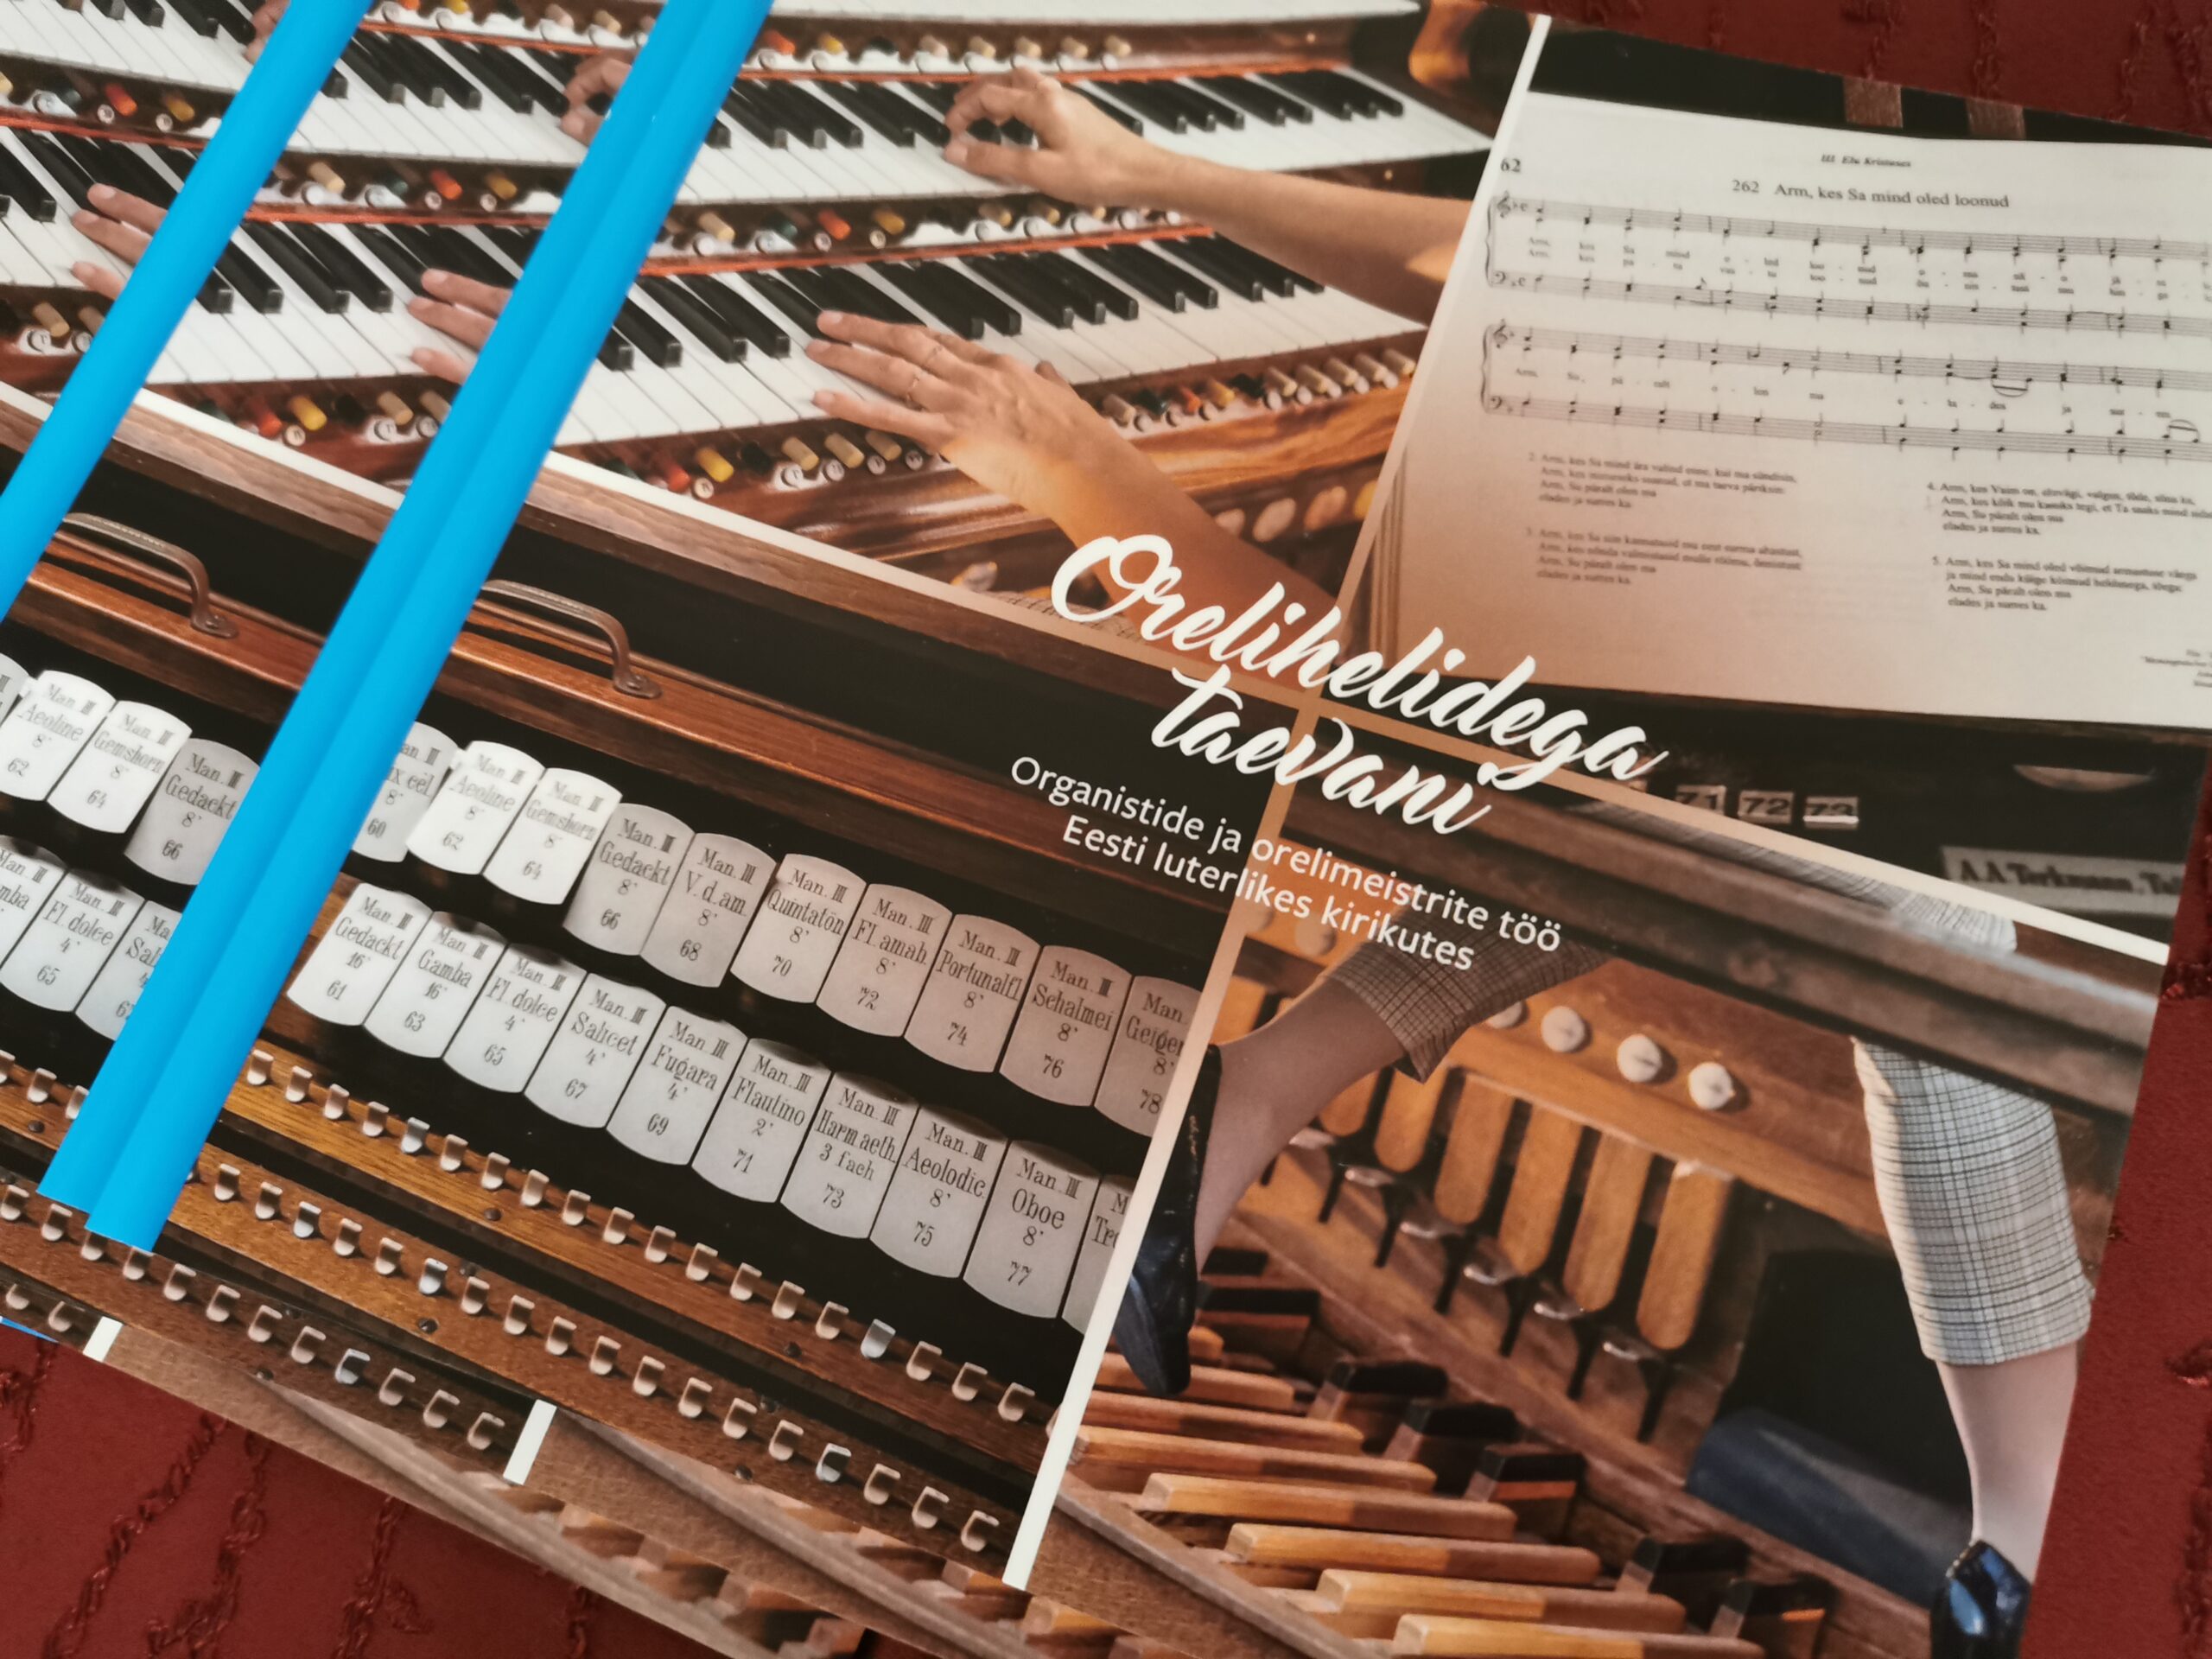 Raamat “Orelihelidega taevani” tutvustab organiste ja orelimeistreid